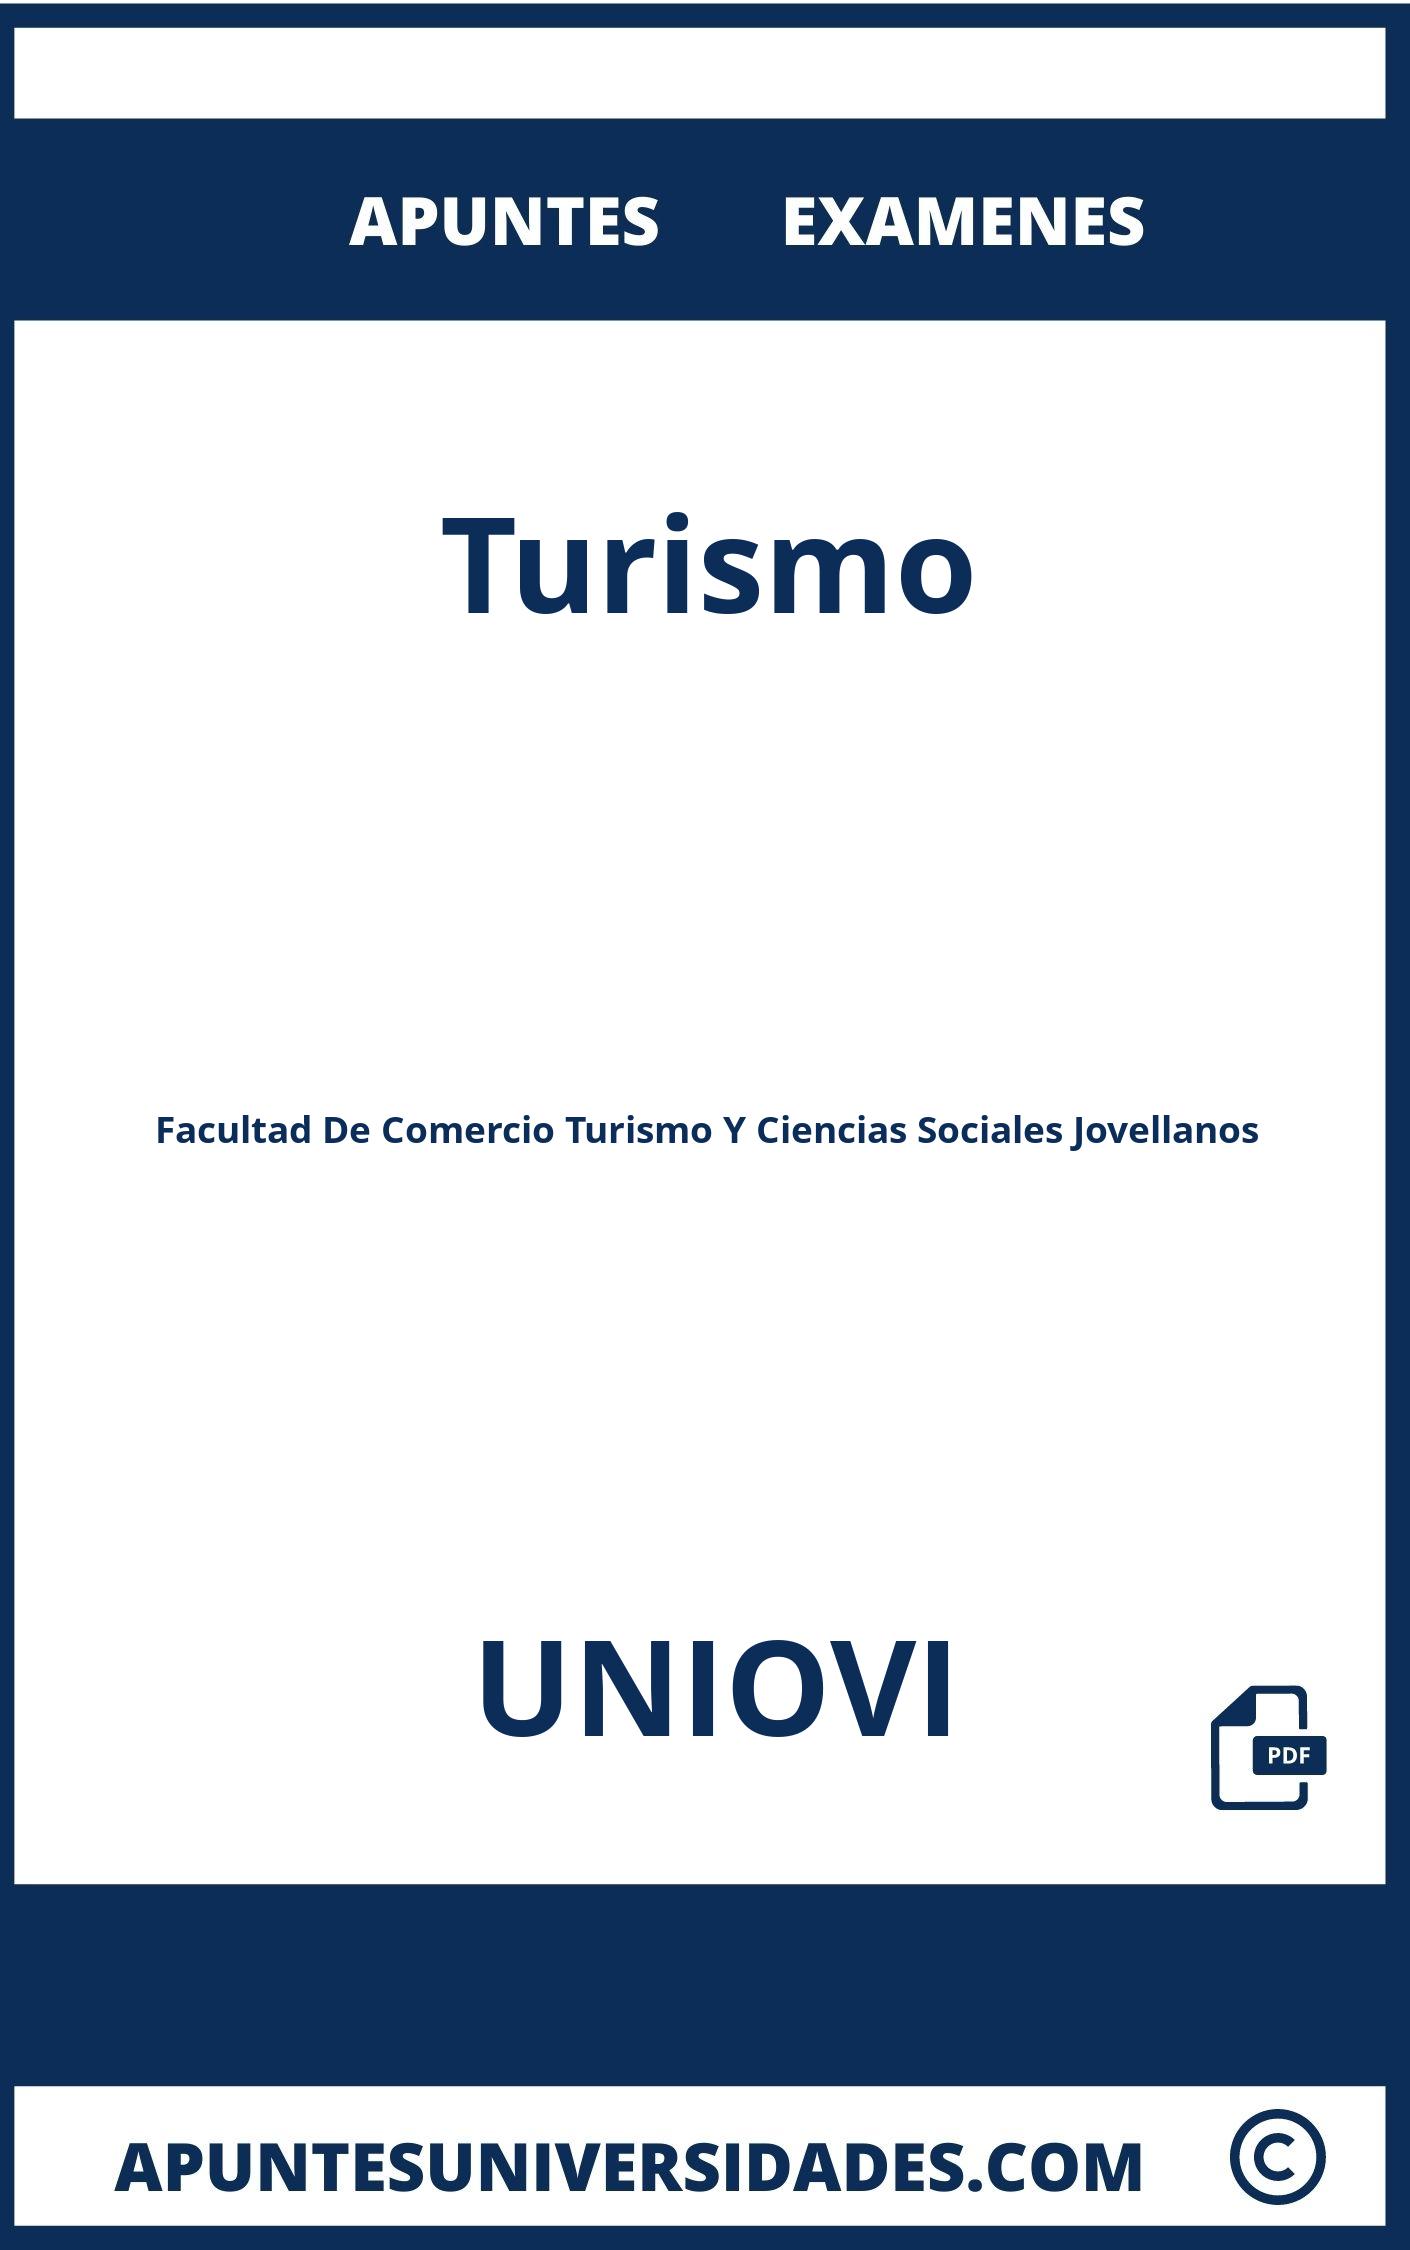 Turismo UNIOVI Examenes Apuntes